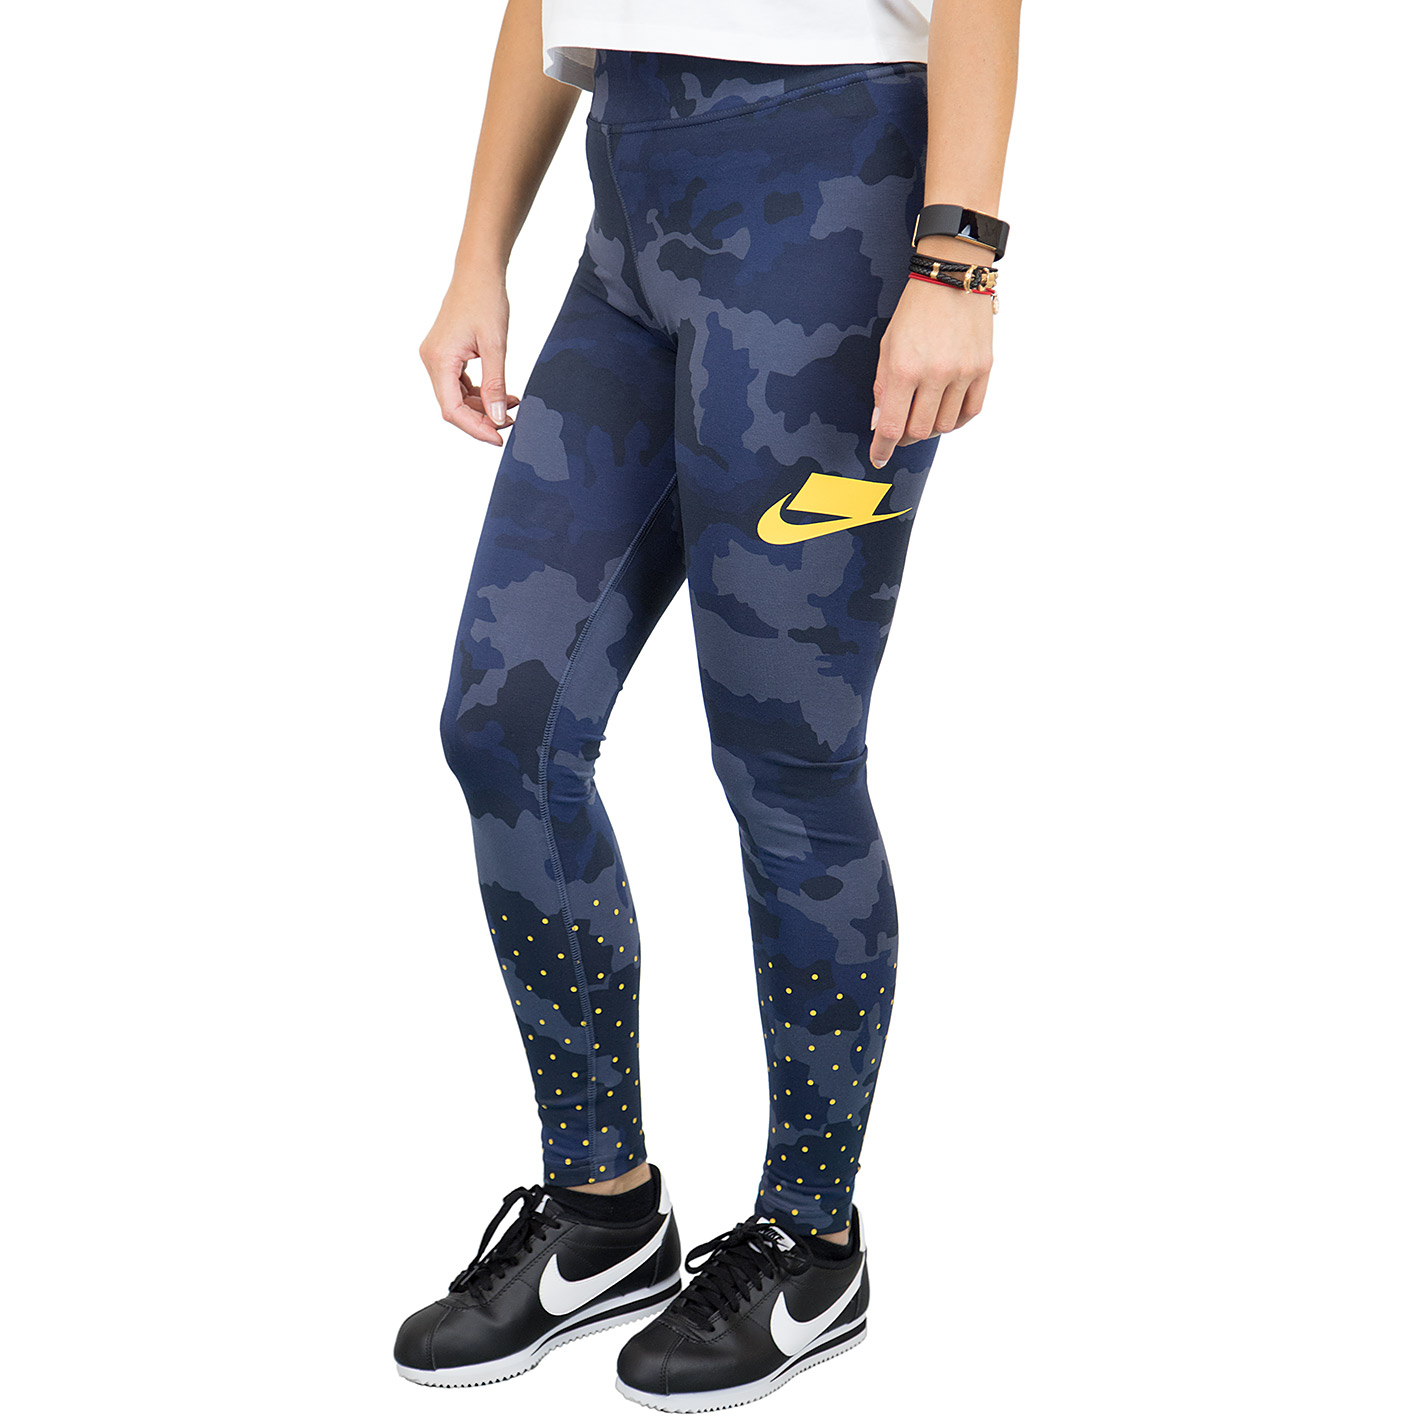 ☆ Nike Leggings Polka Dots blau/gelb - hier bestellen!